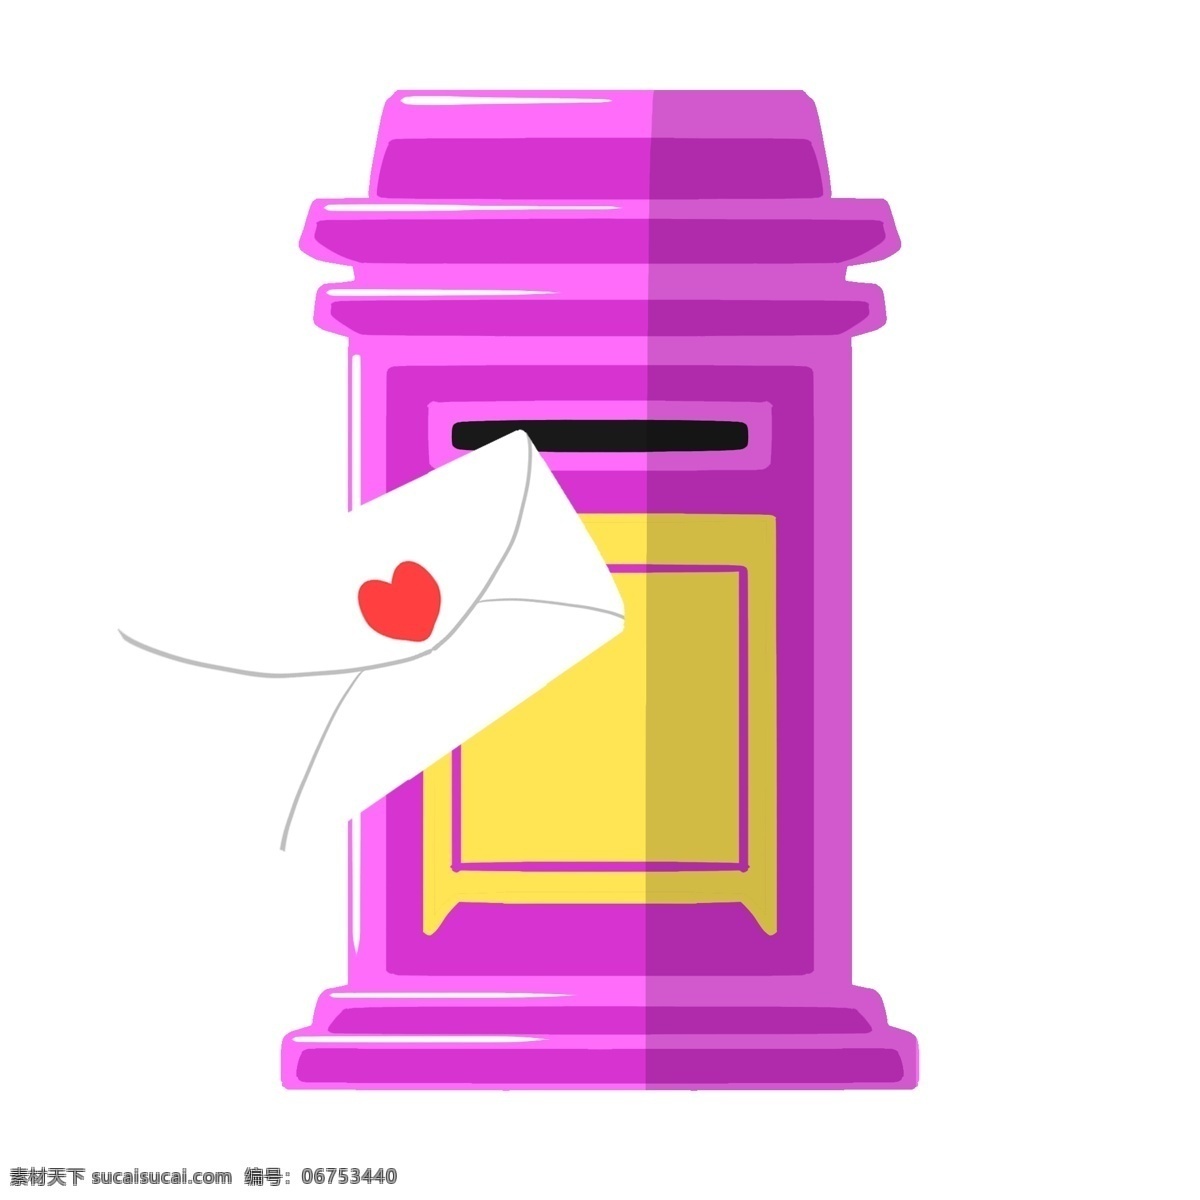 紫色 邮筒 手绘 插画 紫色的邮筒 红色的爱心 白色的信封 漂亮的邮筒 手绘邮筒 卡通邮筒 邮筒装饰